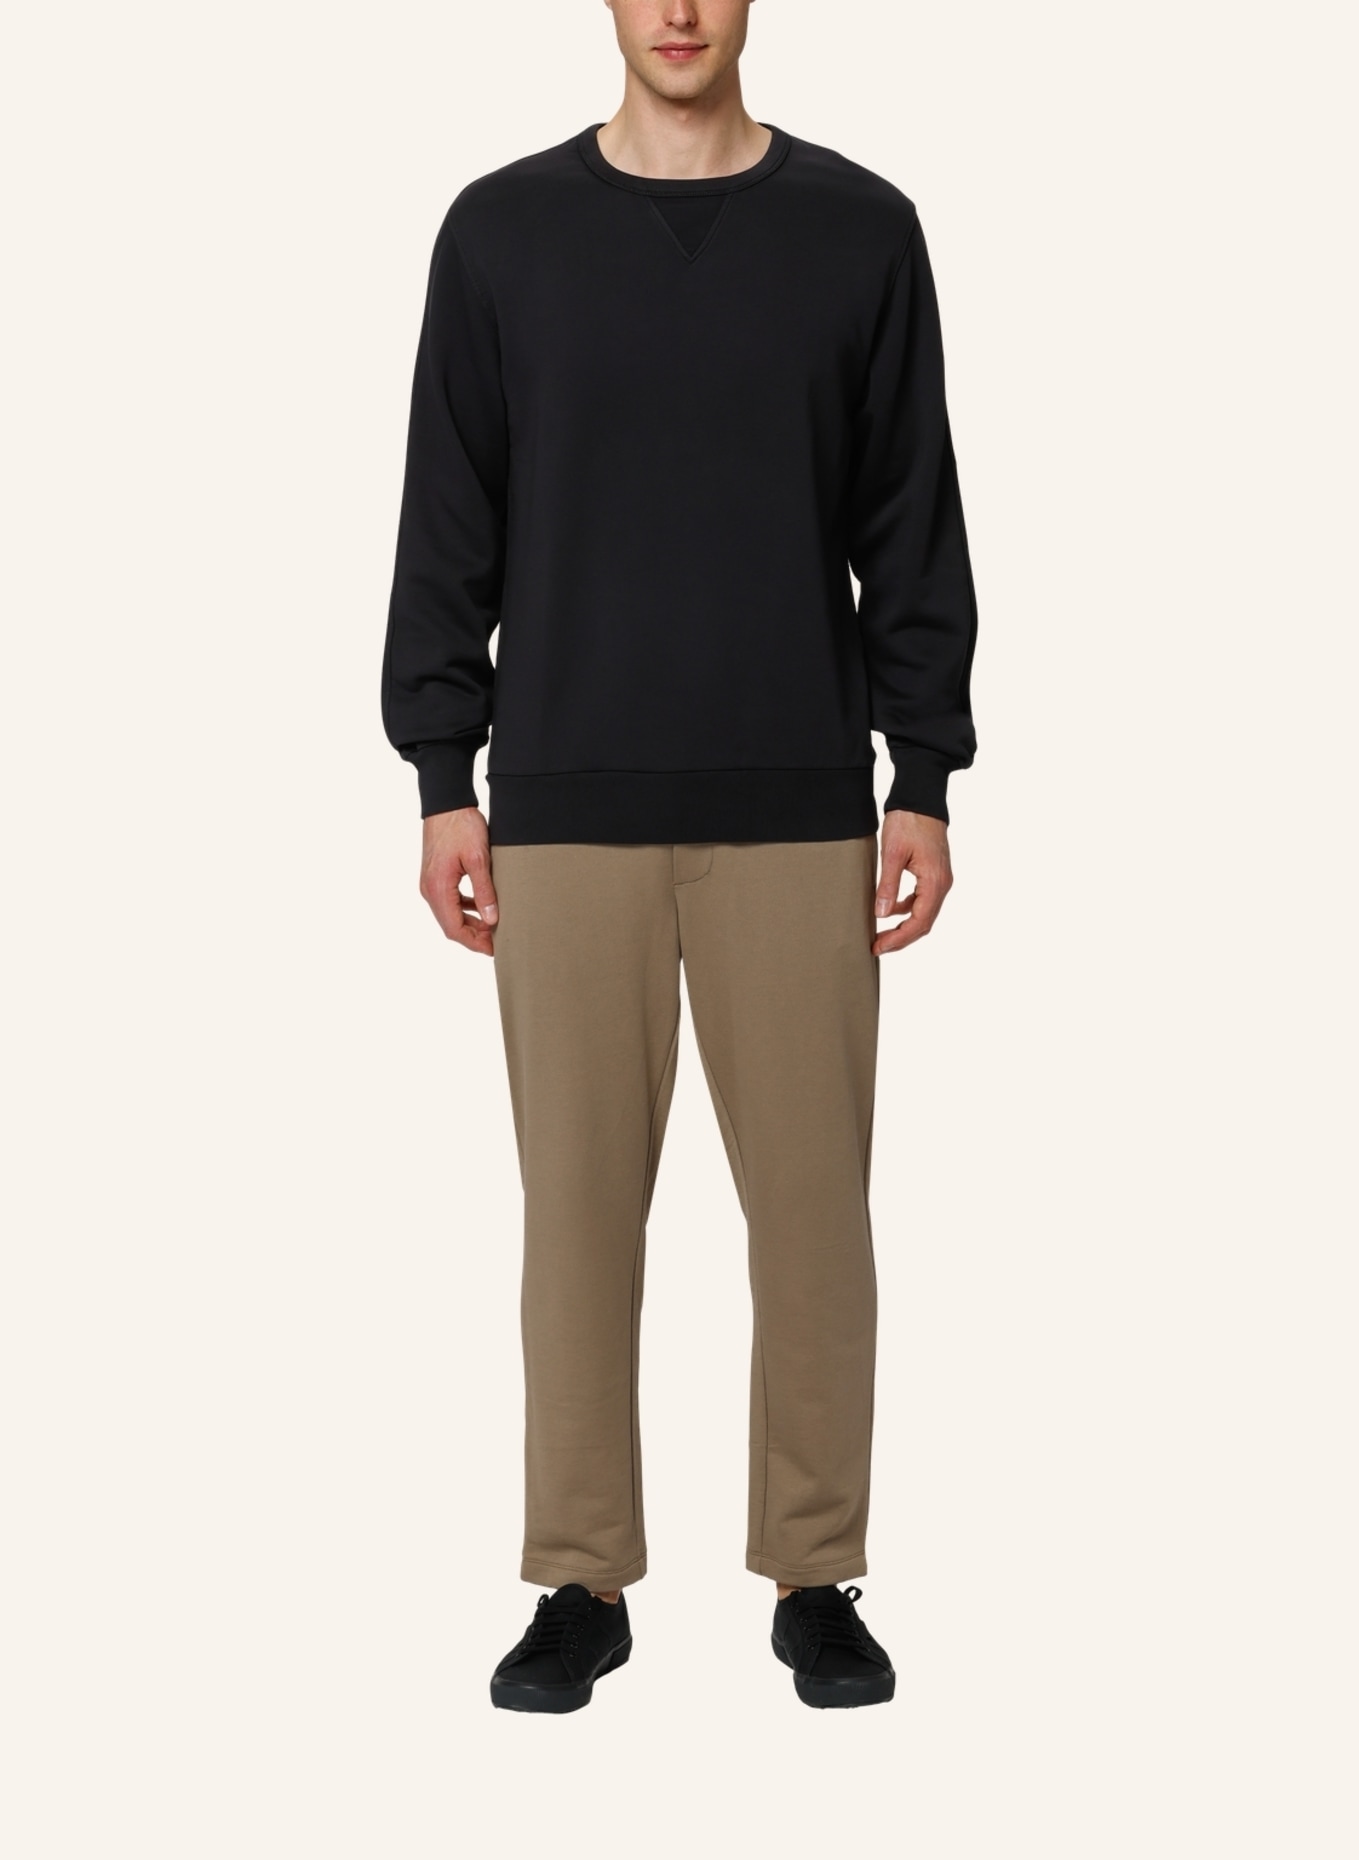 TRUSTED HANDWORK Sweatshirt Regular Fit, Farbe: SCHWARZ (Bild 8)